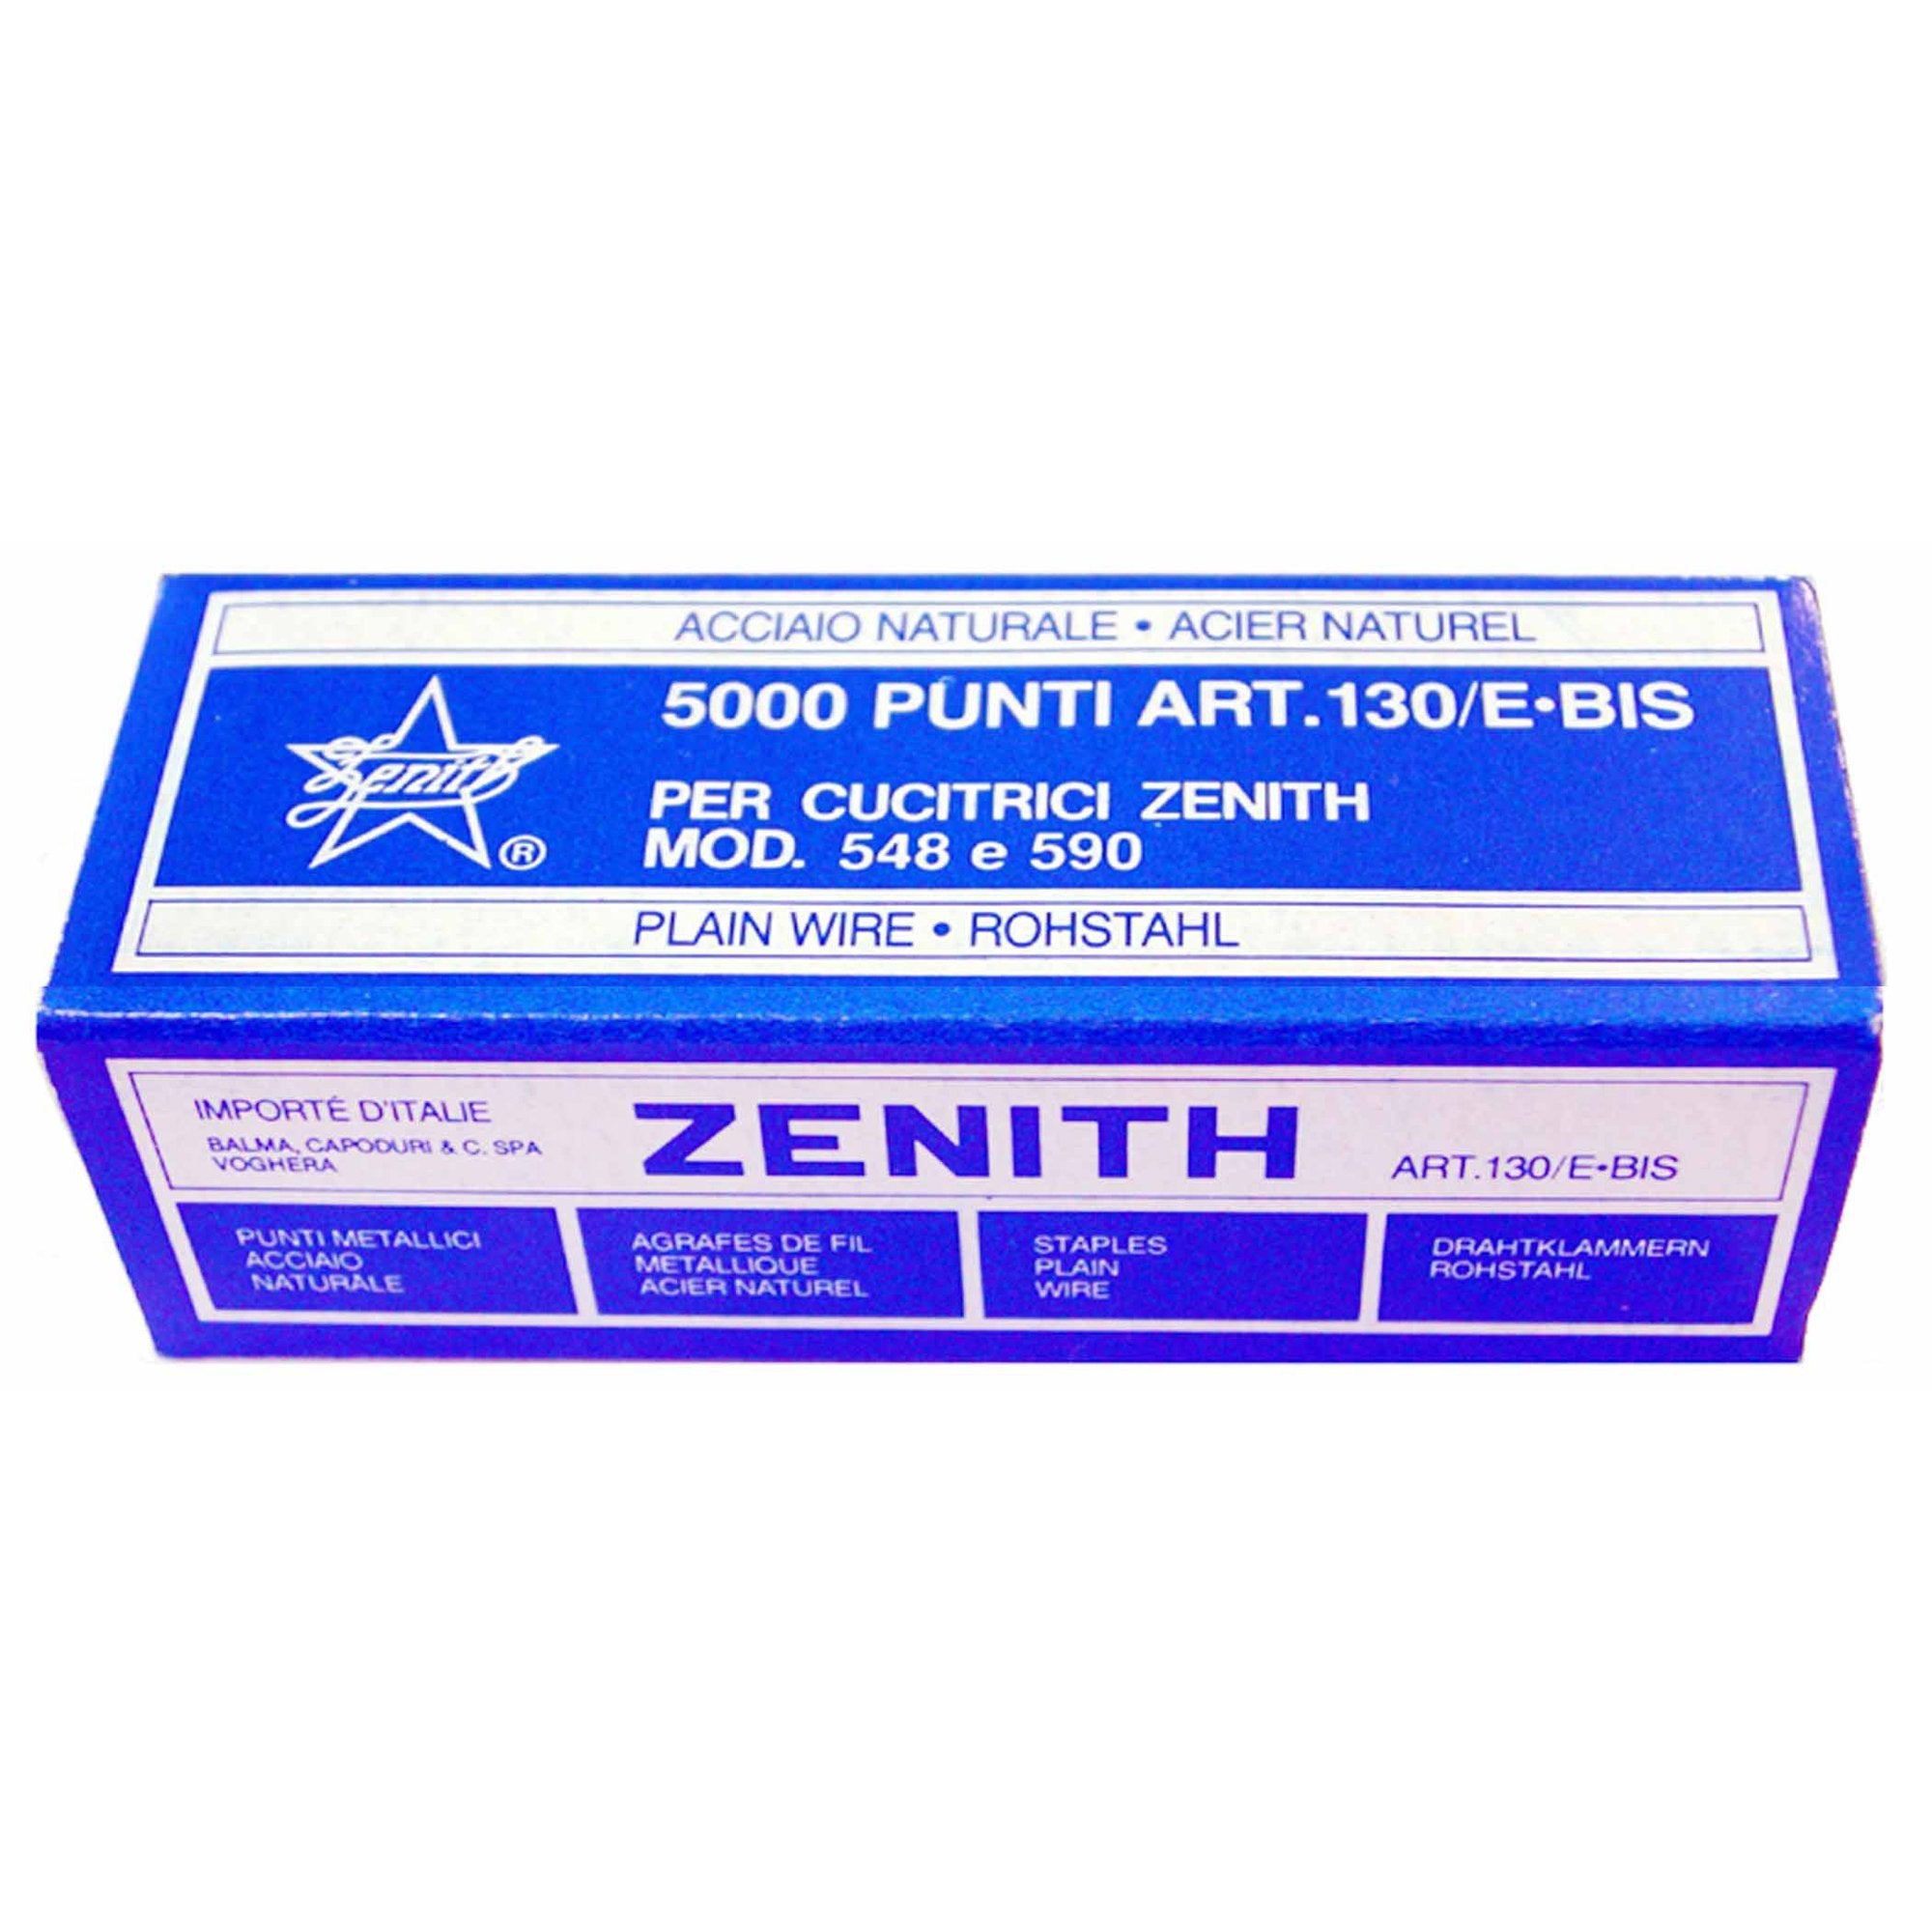 zenith-scatola-5000-punti-130-e-bis-6-4-acciaio-naturale